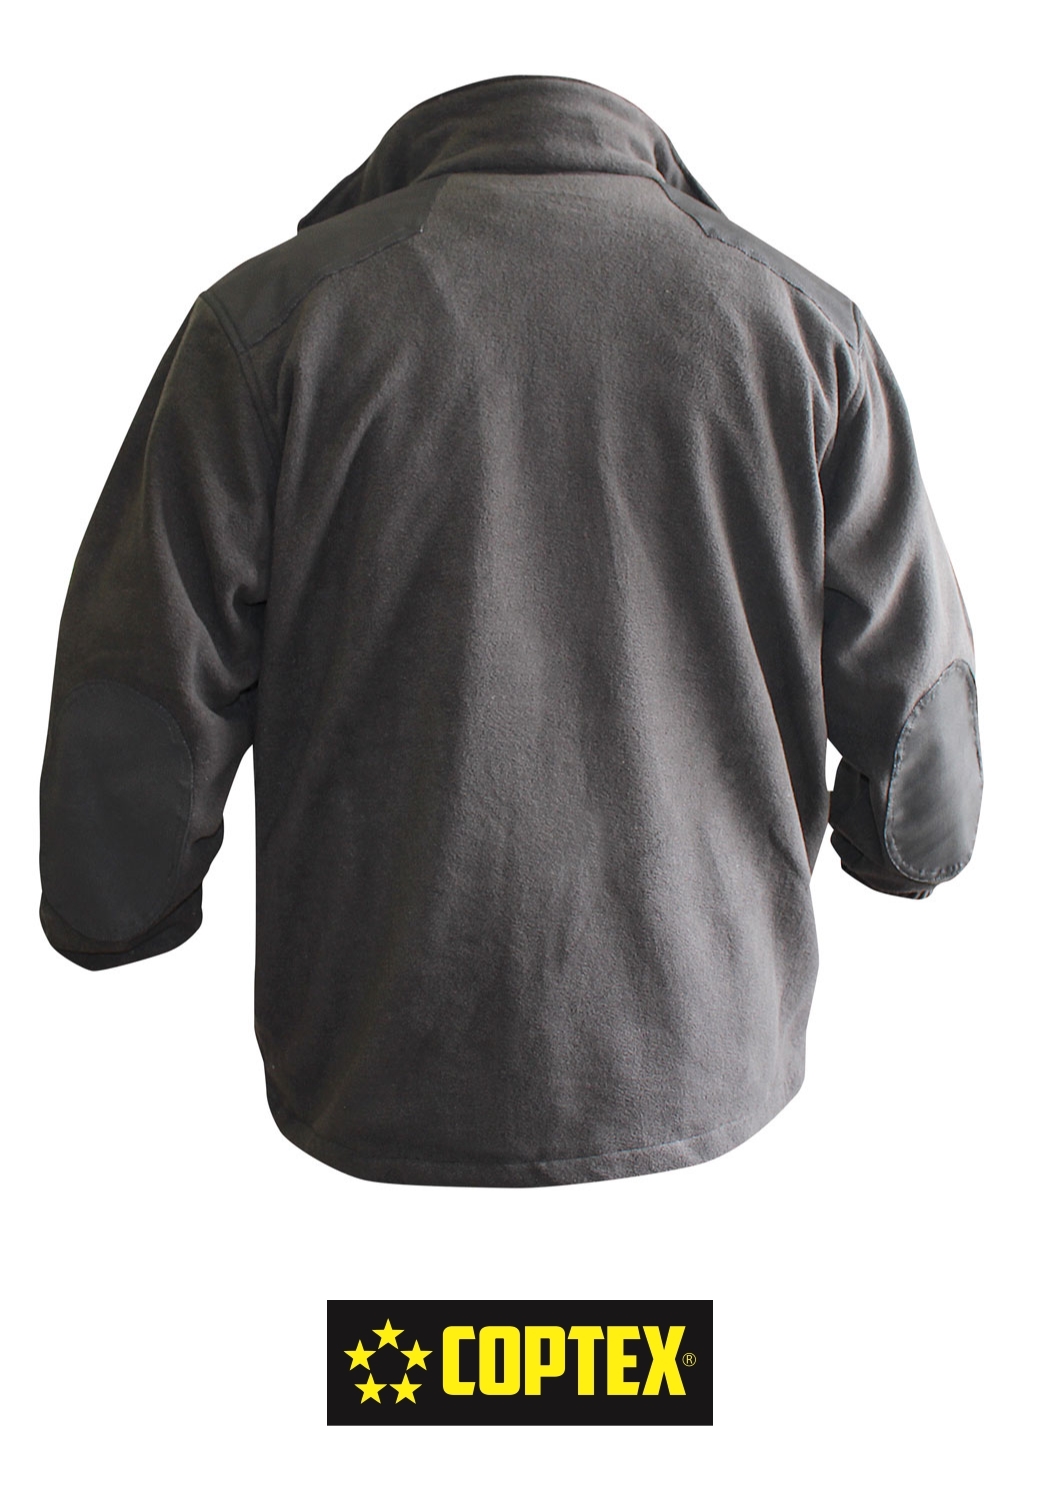 COPTEX Jacke mit Anti Pilling Fleece und Schulterverstärkung